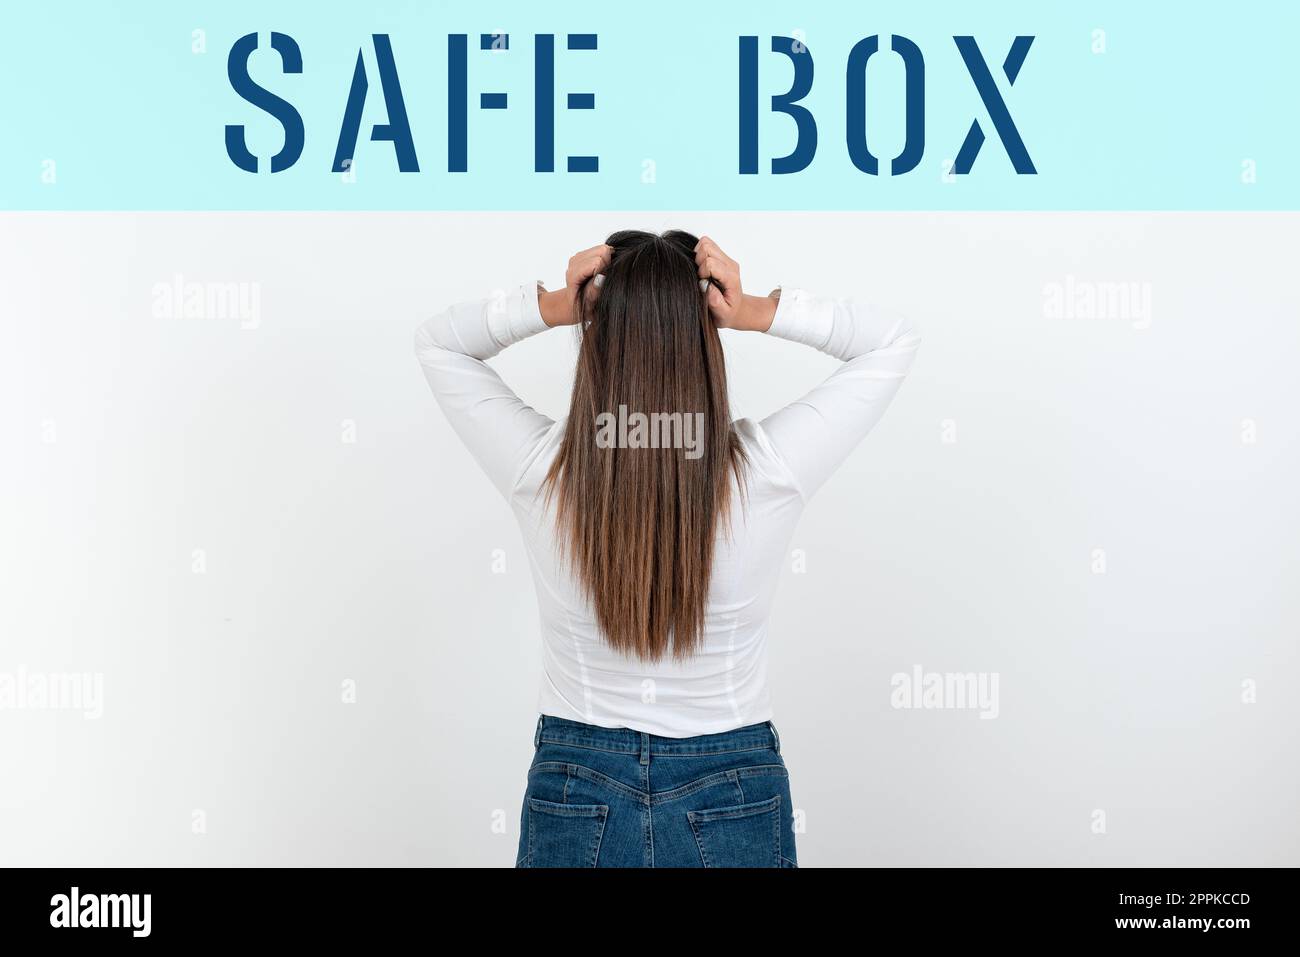 Handschriftschild Safe Box. Unternehmen präsentieren Eine kleine Struktur, in der Sie wichtige oder wertvolle Dinge aufbewahren können Stockfoto